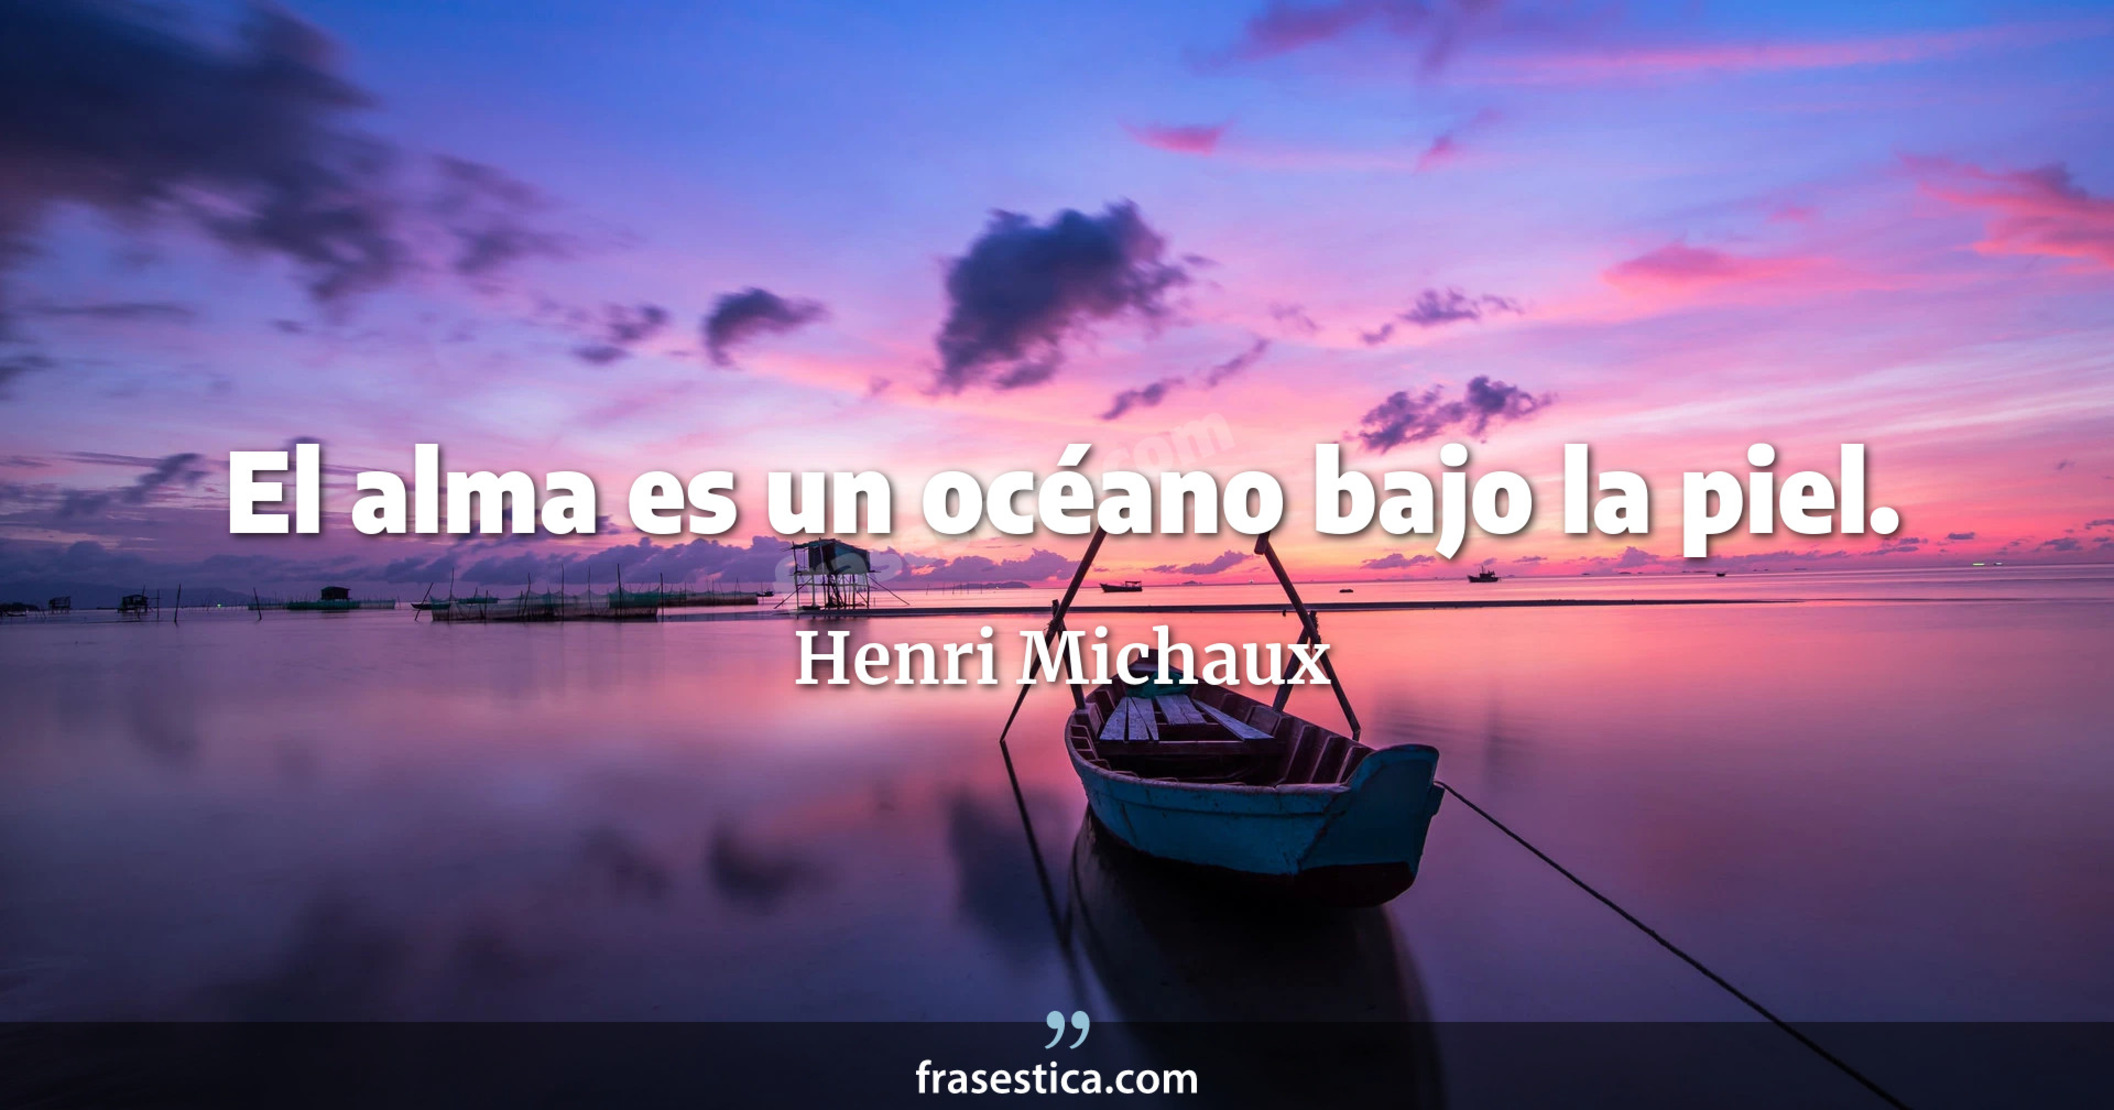 El alma es un océano bajo la piel. - Henri Michaux